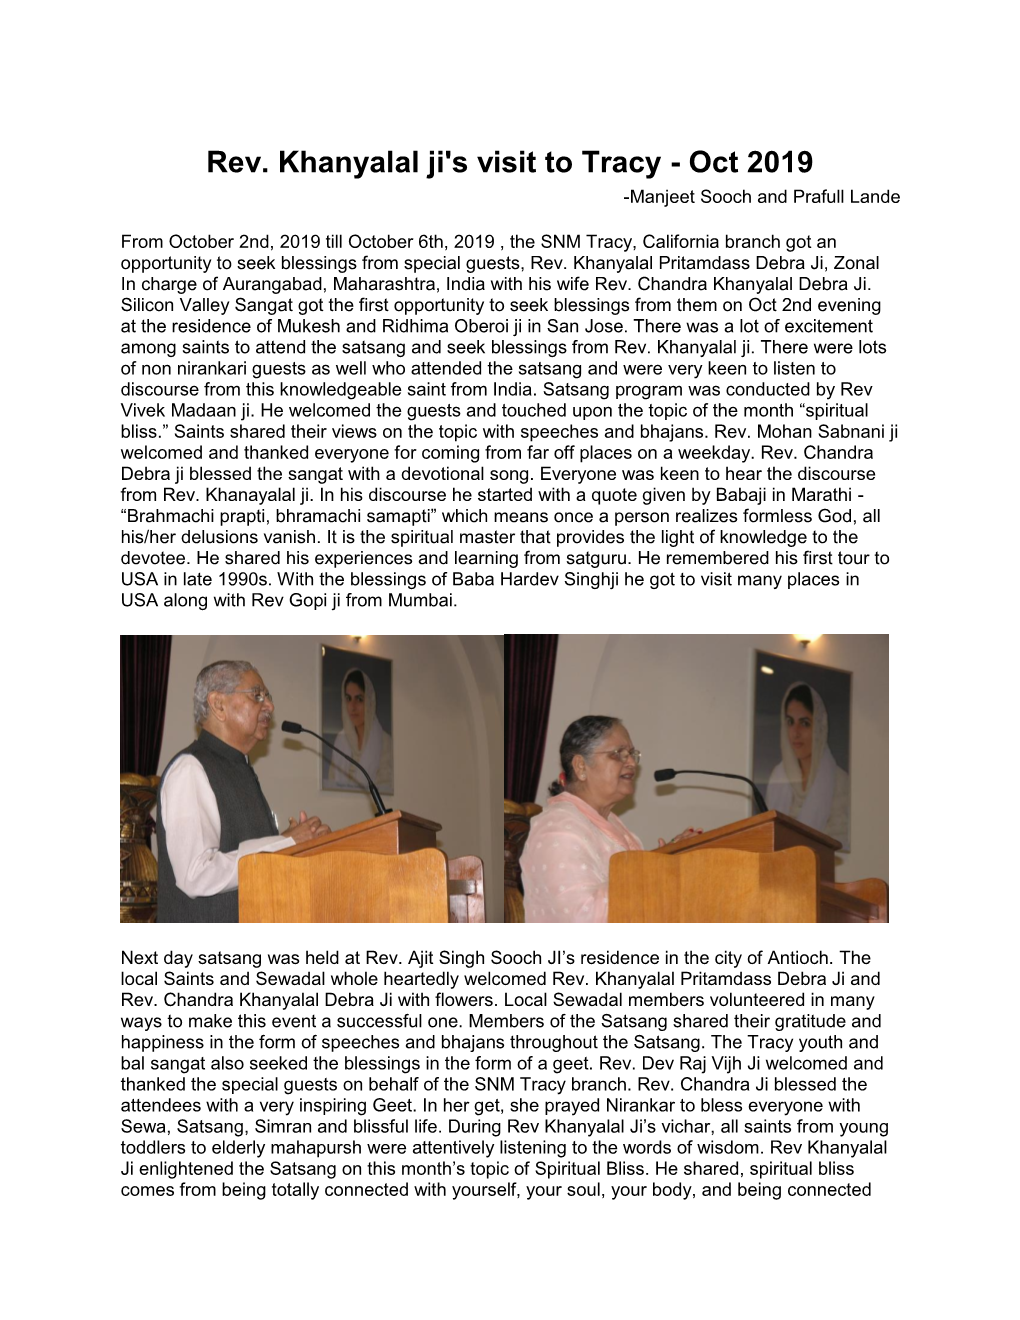 Rev. Khanyalal Ji's Visit to Tracy - Oct 2019 -Manjeet Sooch and Prafull Lande